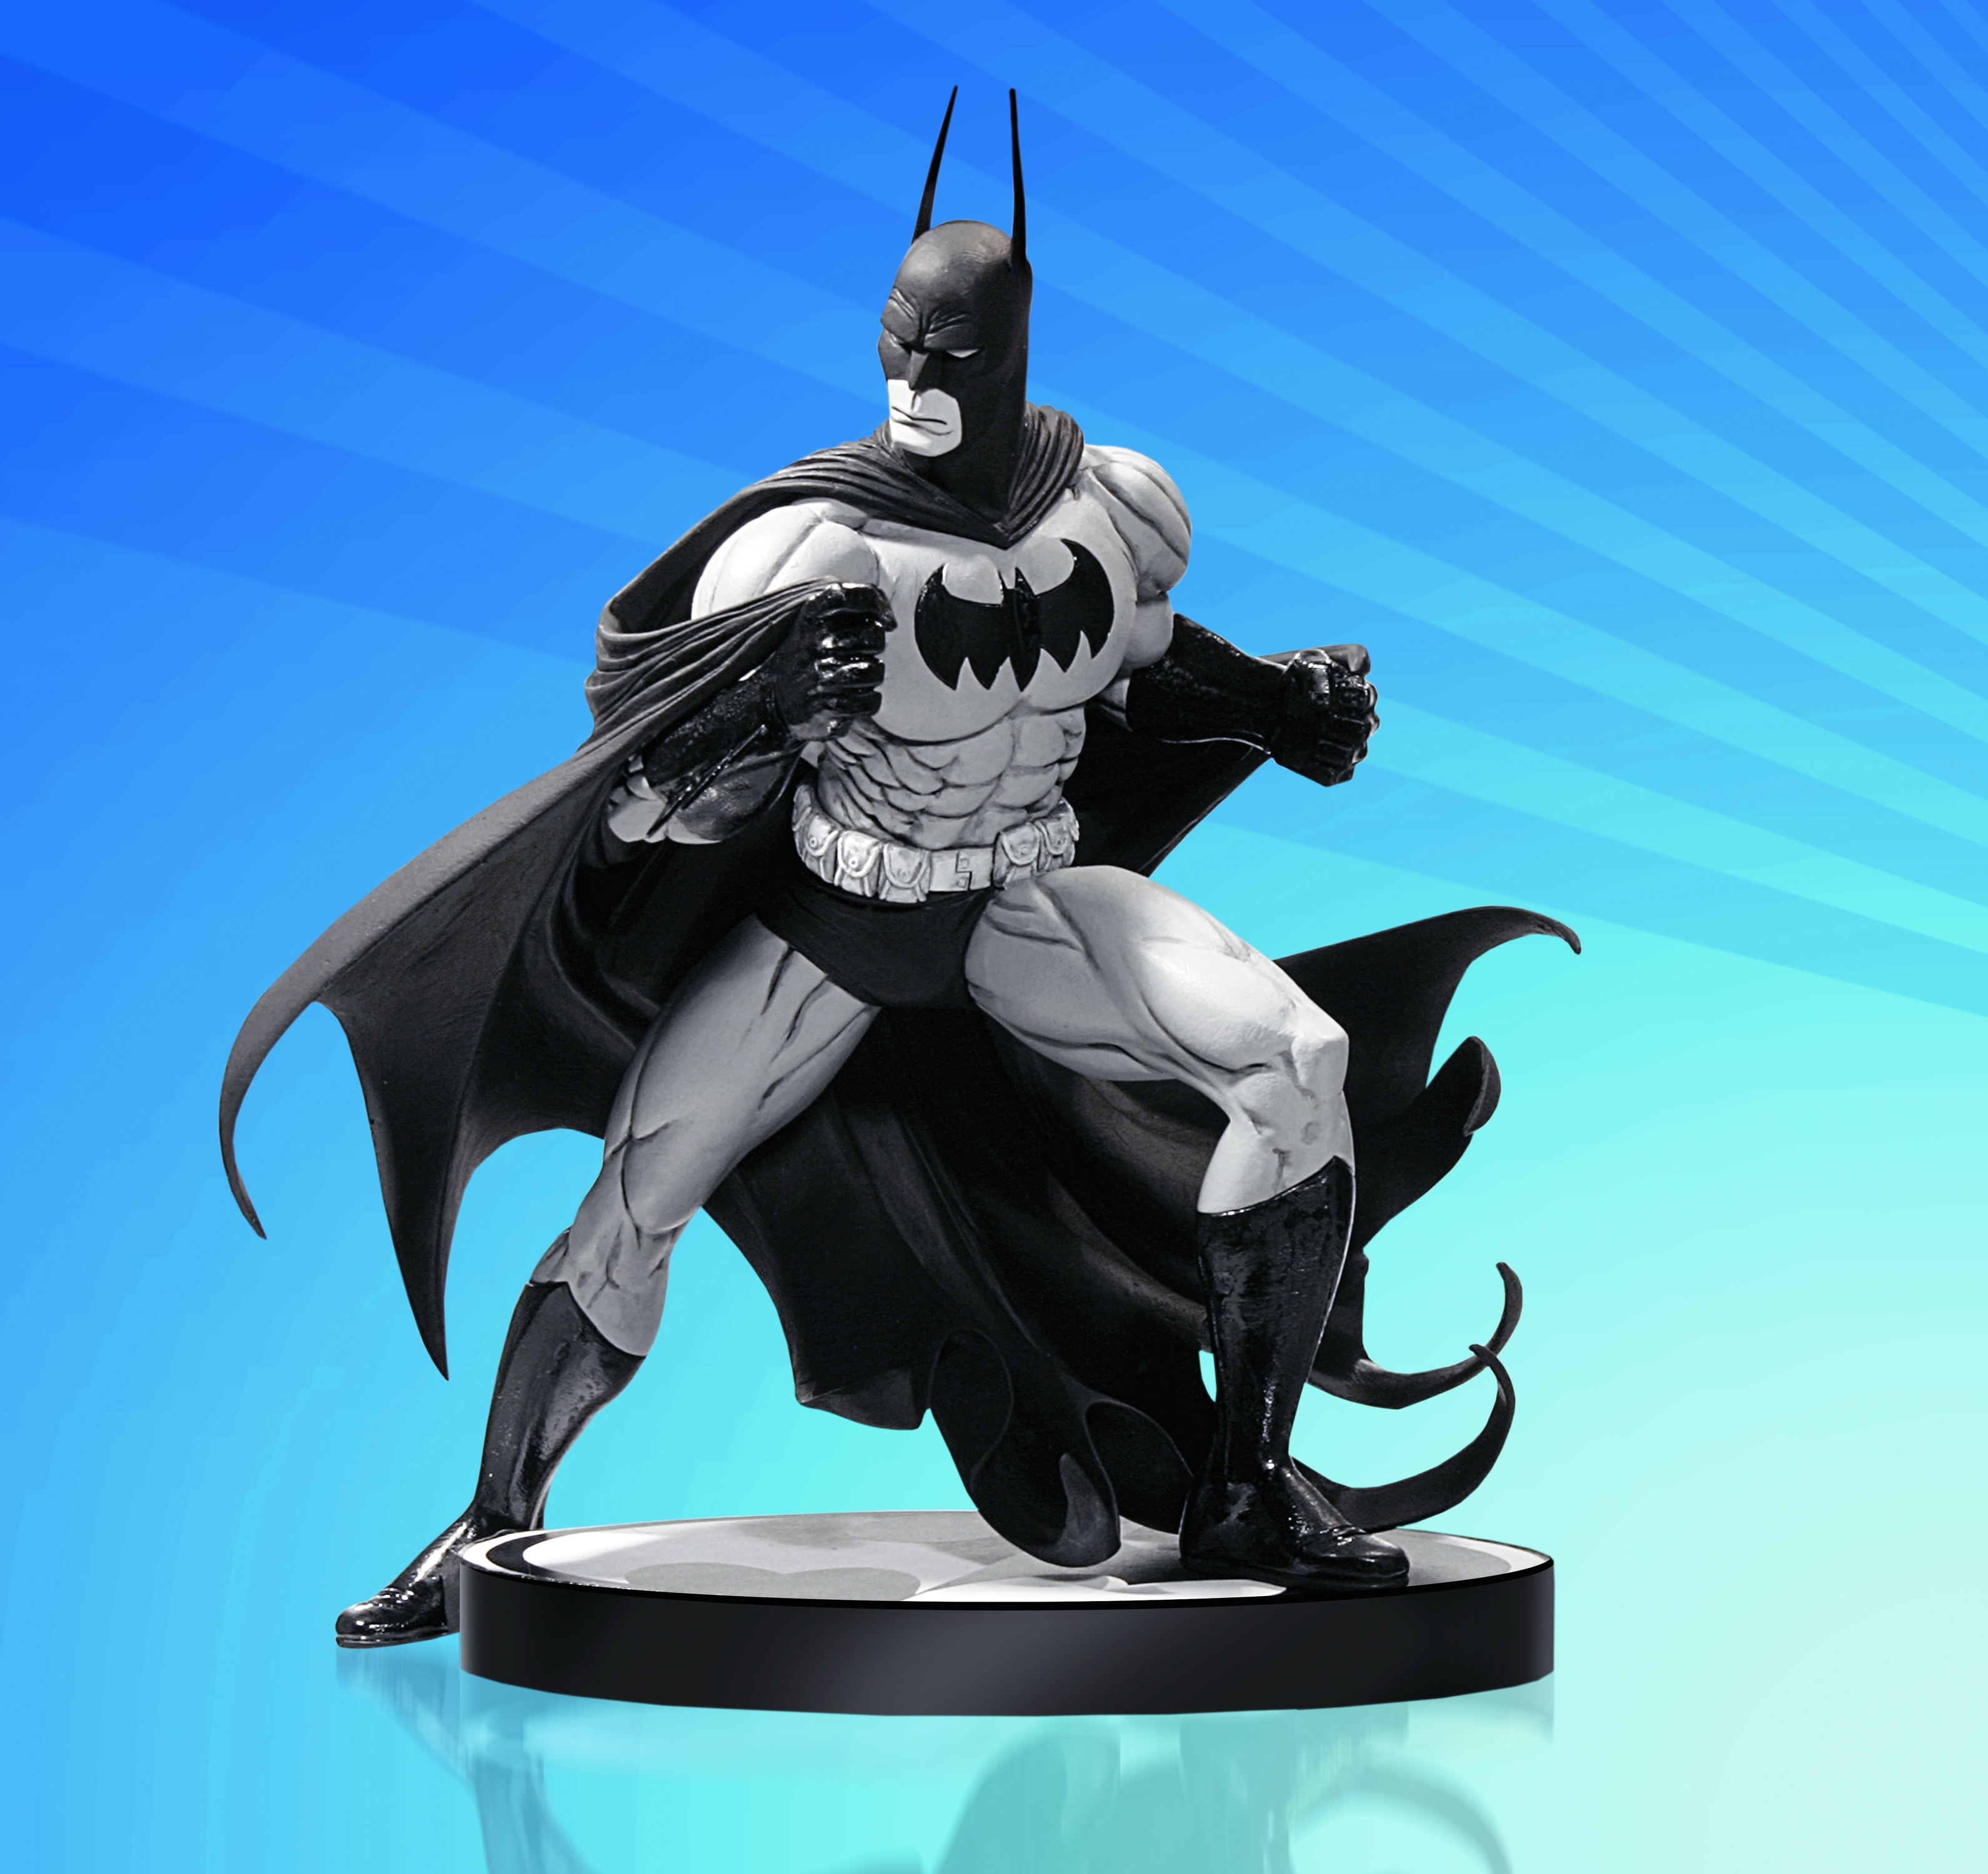 White batman. Статуя Бэтмена. Девил Бэтмен. Бэтмен черный рыцарь. Batman Black and White Statue.